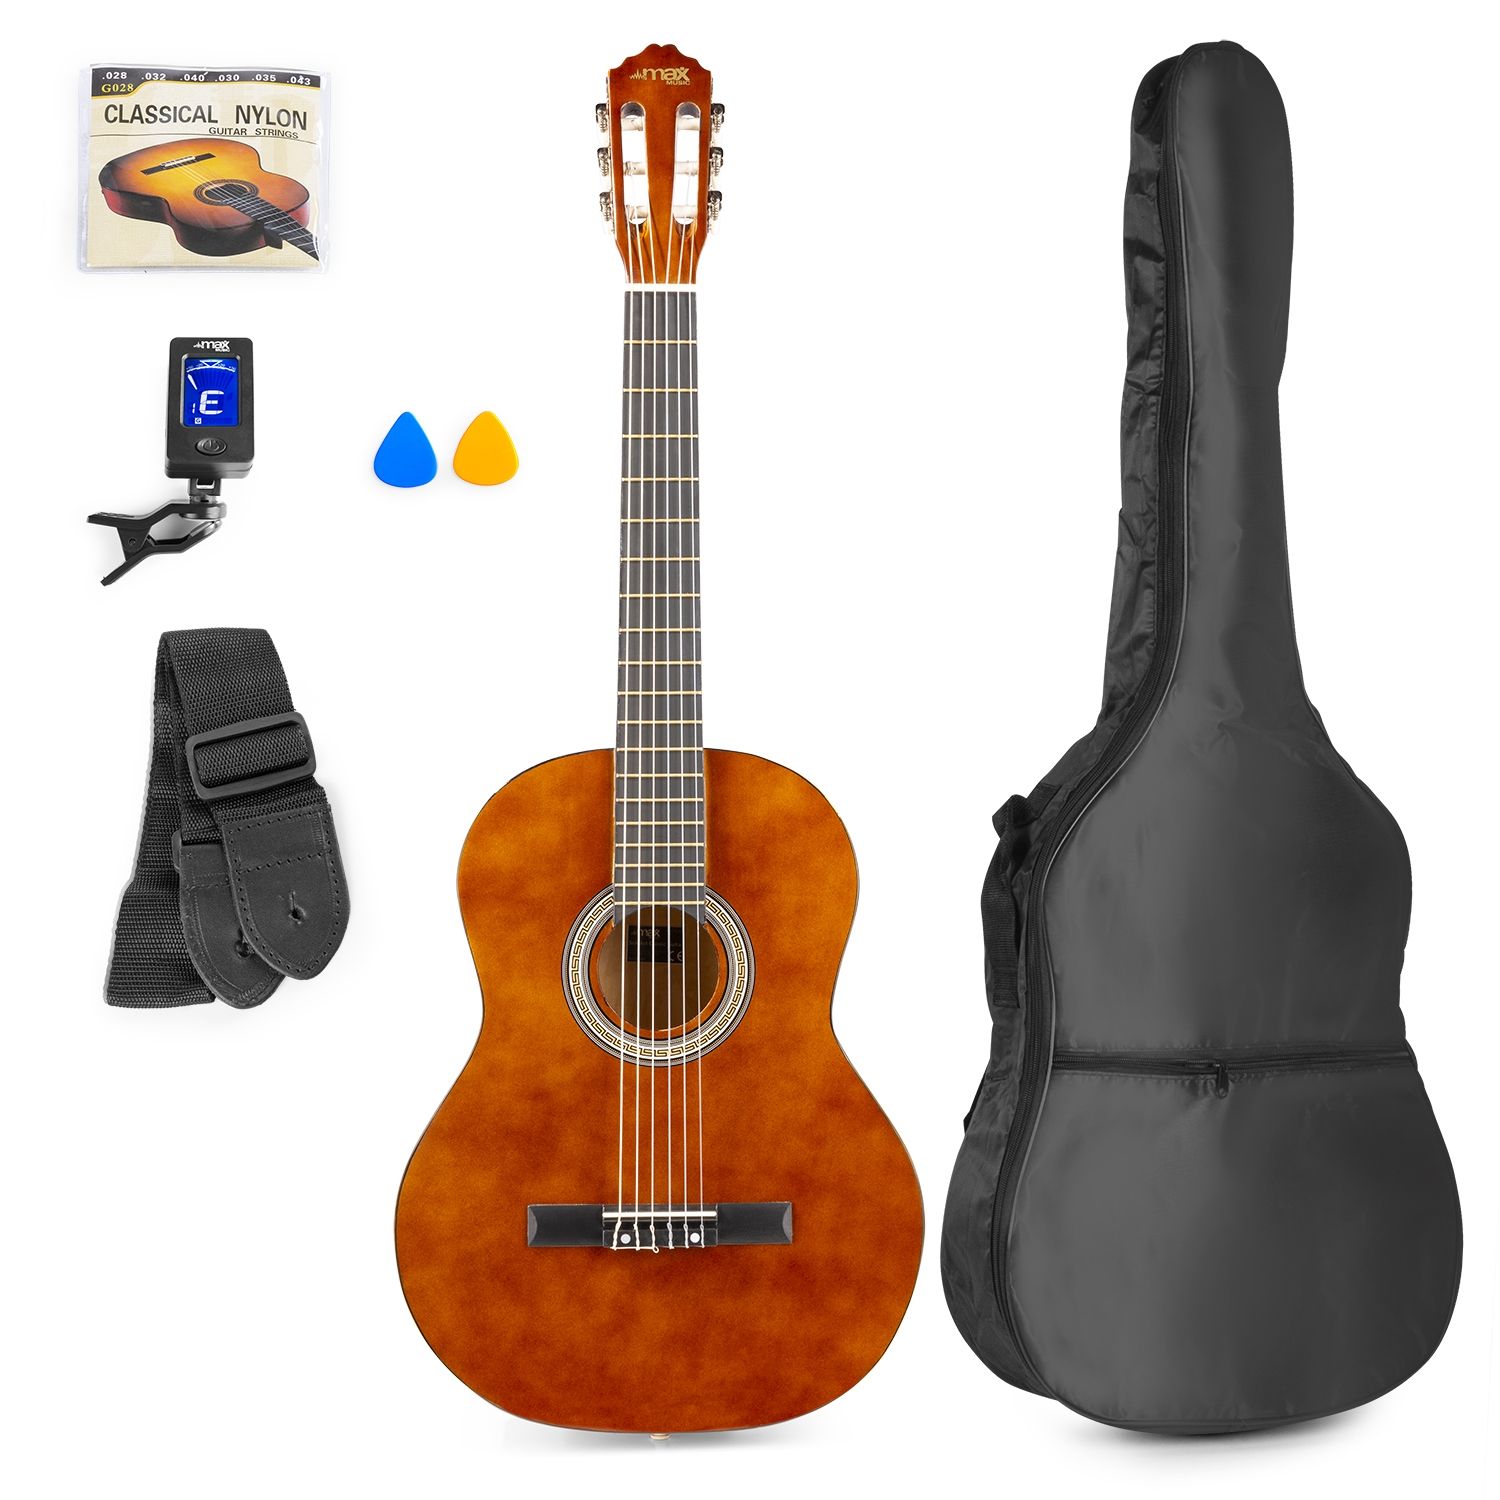 MAX Pack Guitare Électro-Acoustique avec Accessoires - Sunburst